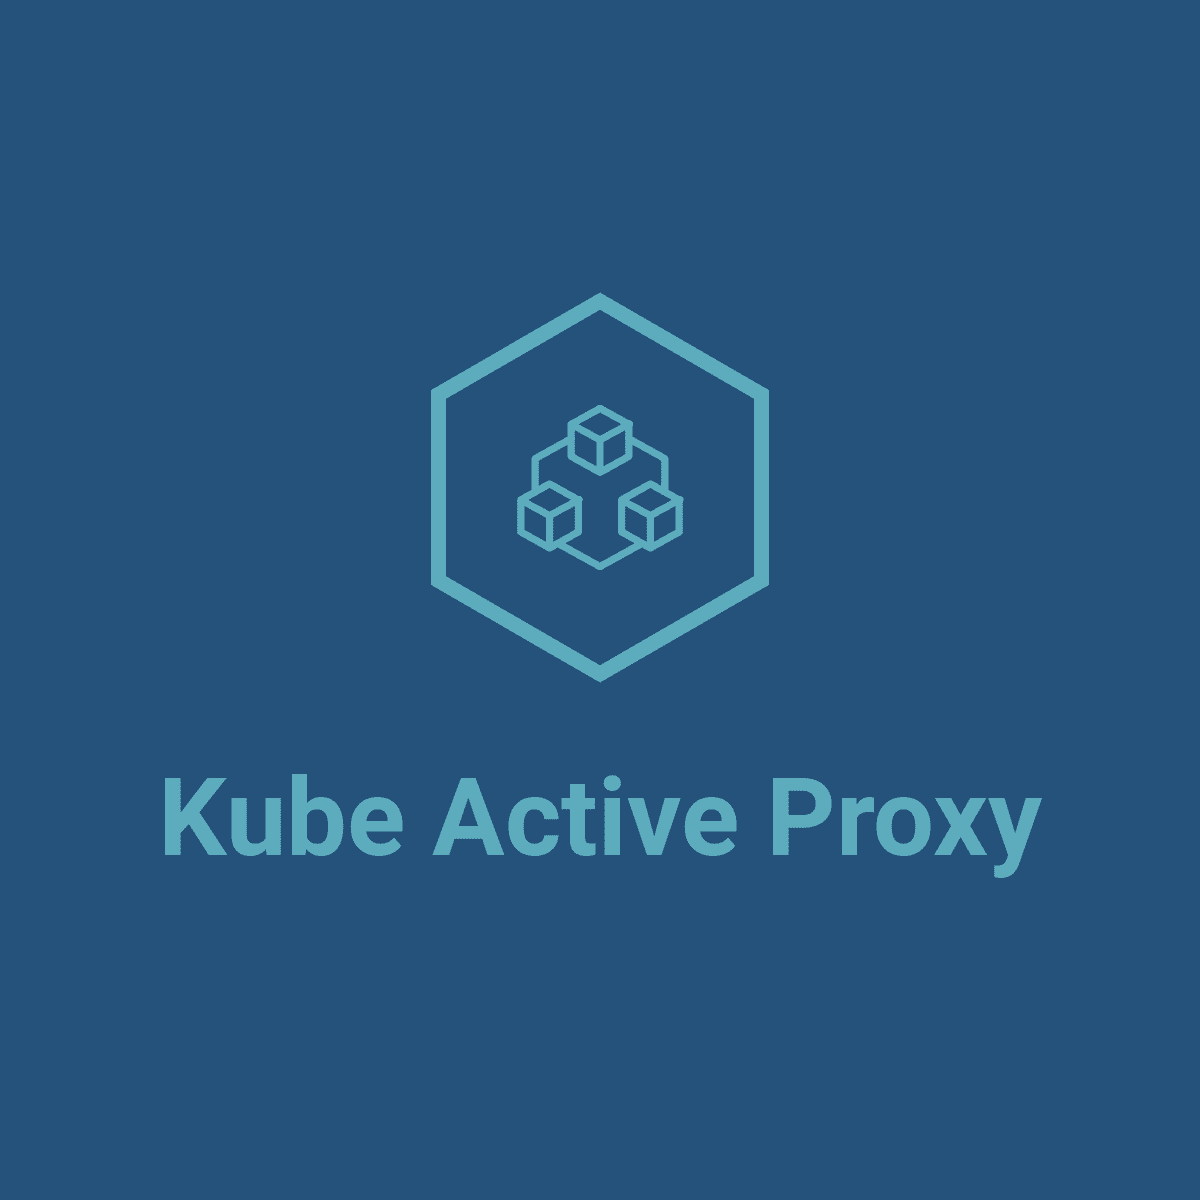 Kube Active Proxy